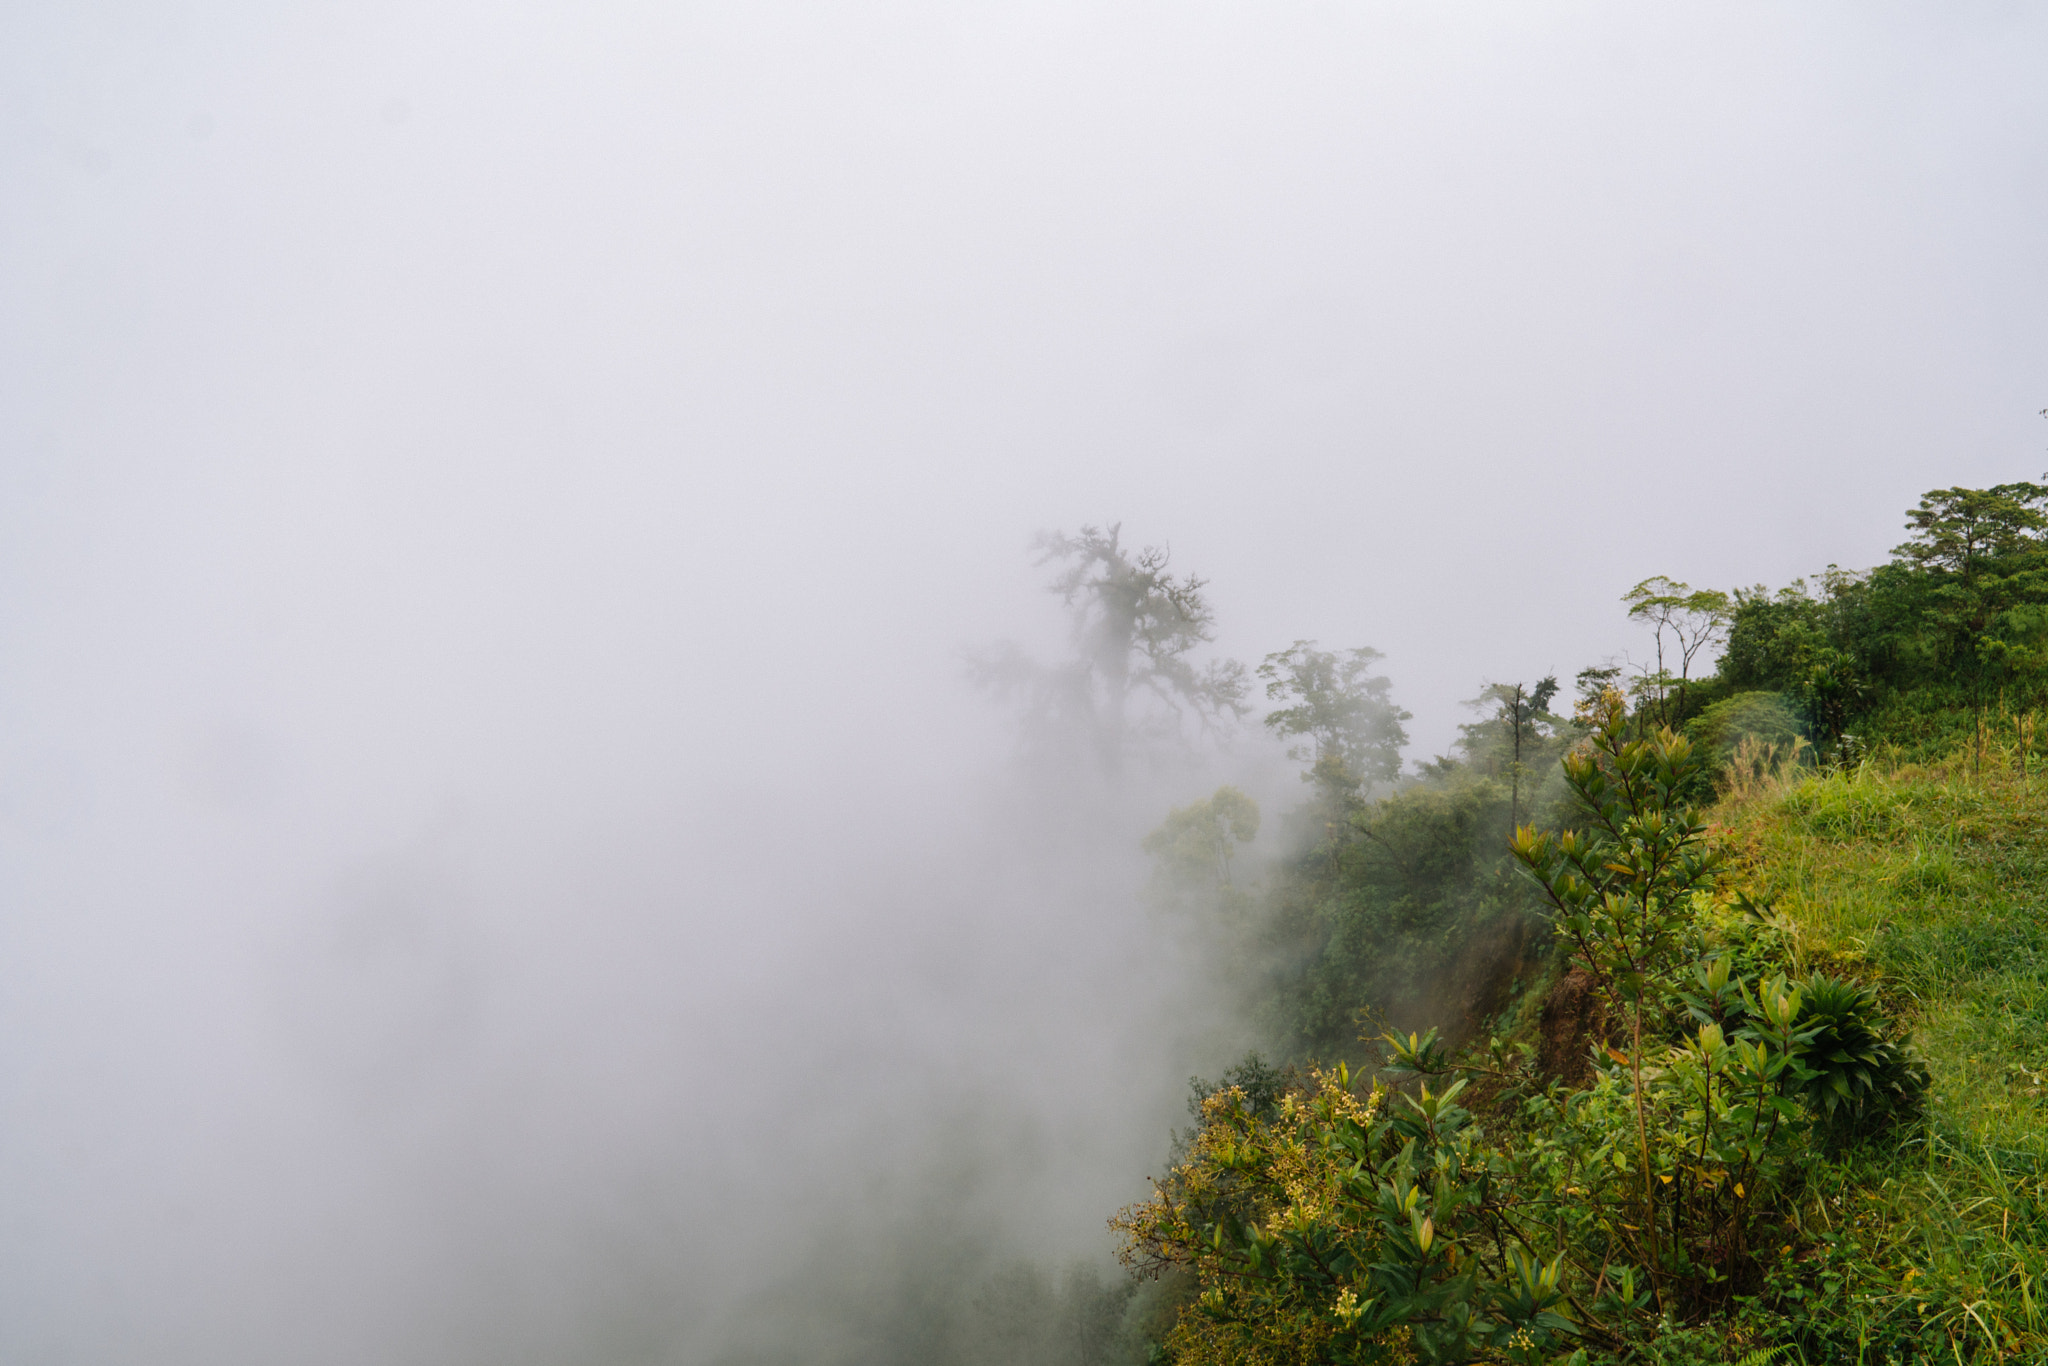 Sony a6300 + Sony E 18-200mm F3.5-6.3 OSS sample photo. Rainforest fog photography